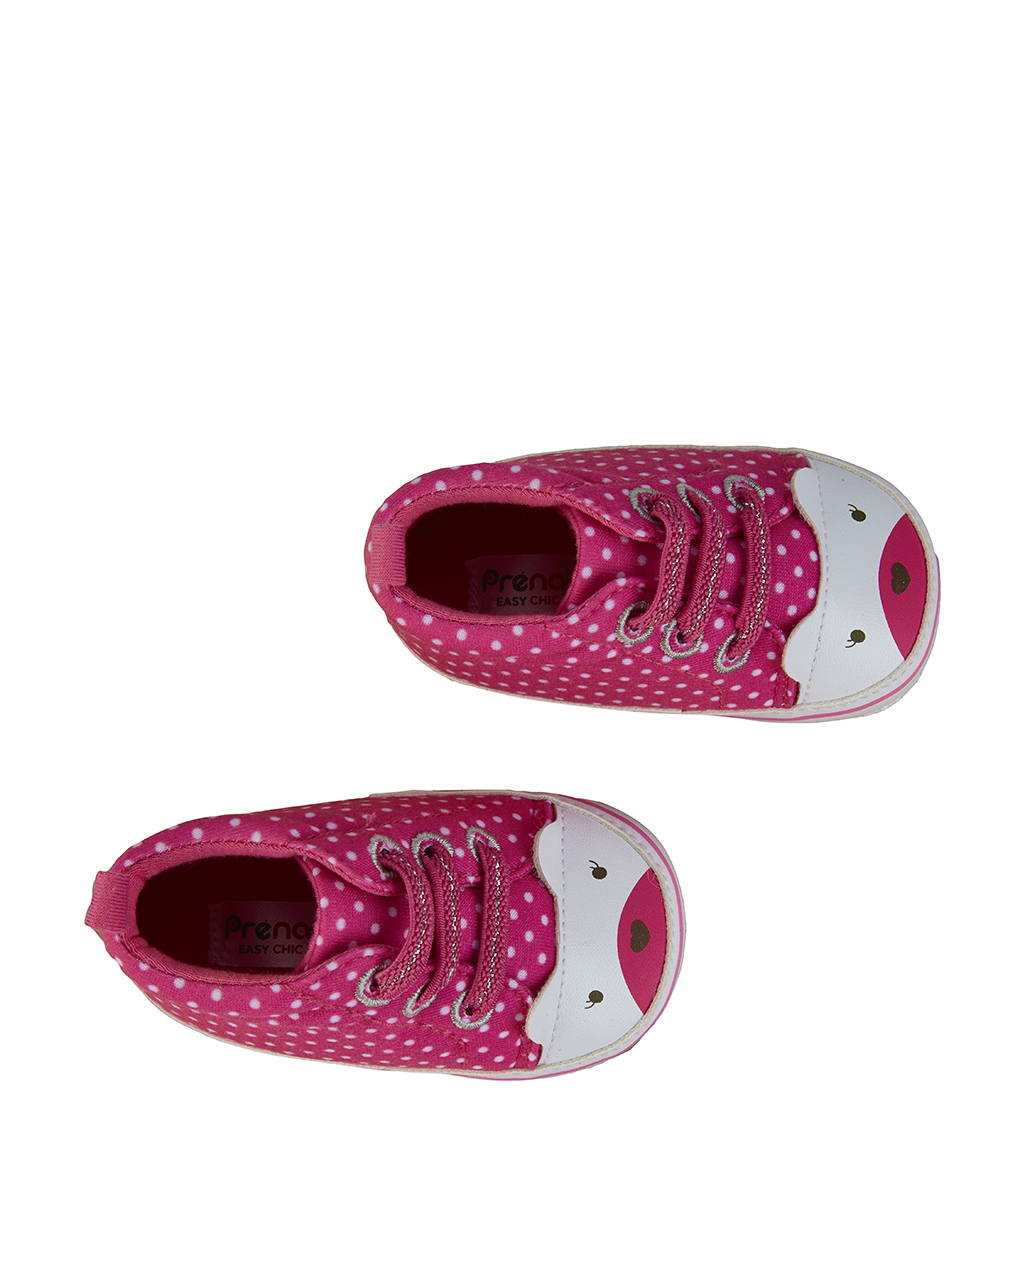 βρεφικά παπούτσια αγκαλιάς ροζ με πουά για κορίτσι - Prénatal